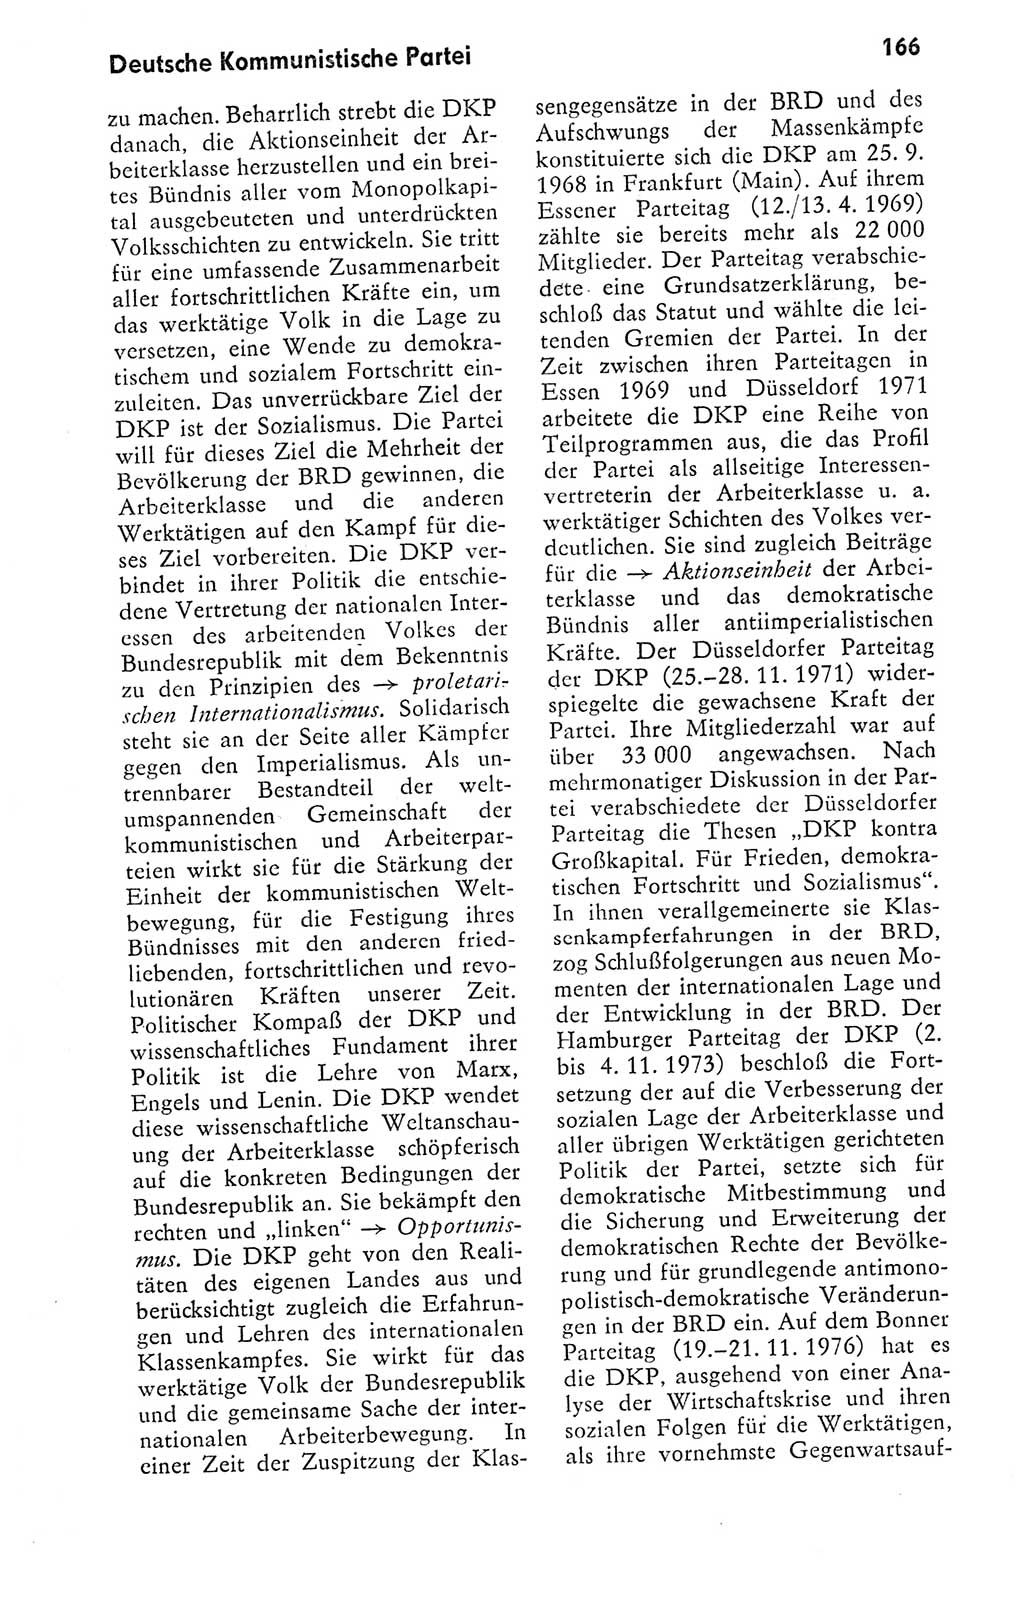 Kleines politisches Wörterbuch [Deutsche Demokratische Republik (DDR)] 1978, Seite 166 (Kl. pol. Wb. DDR 1978, S. 166)